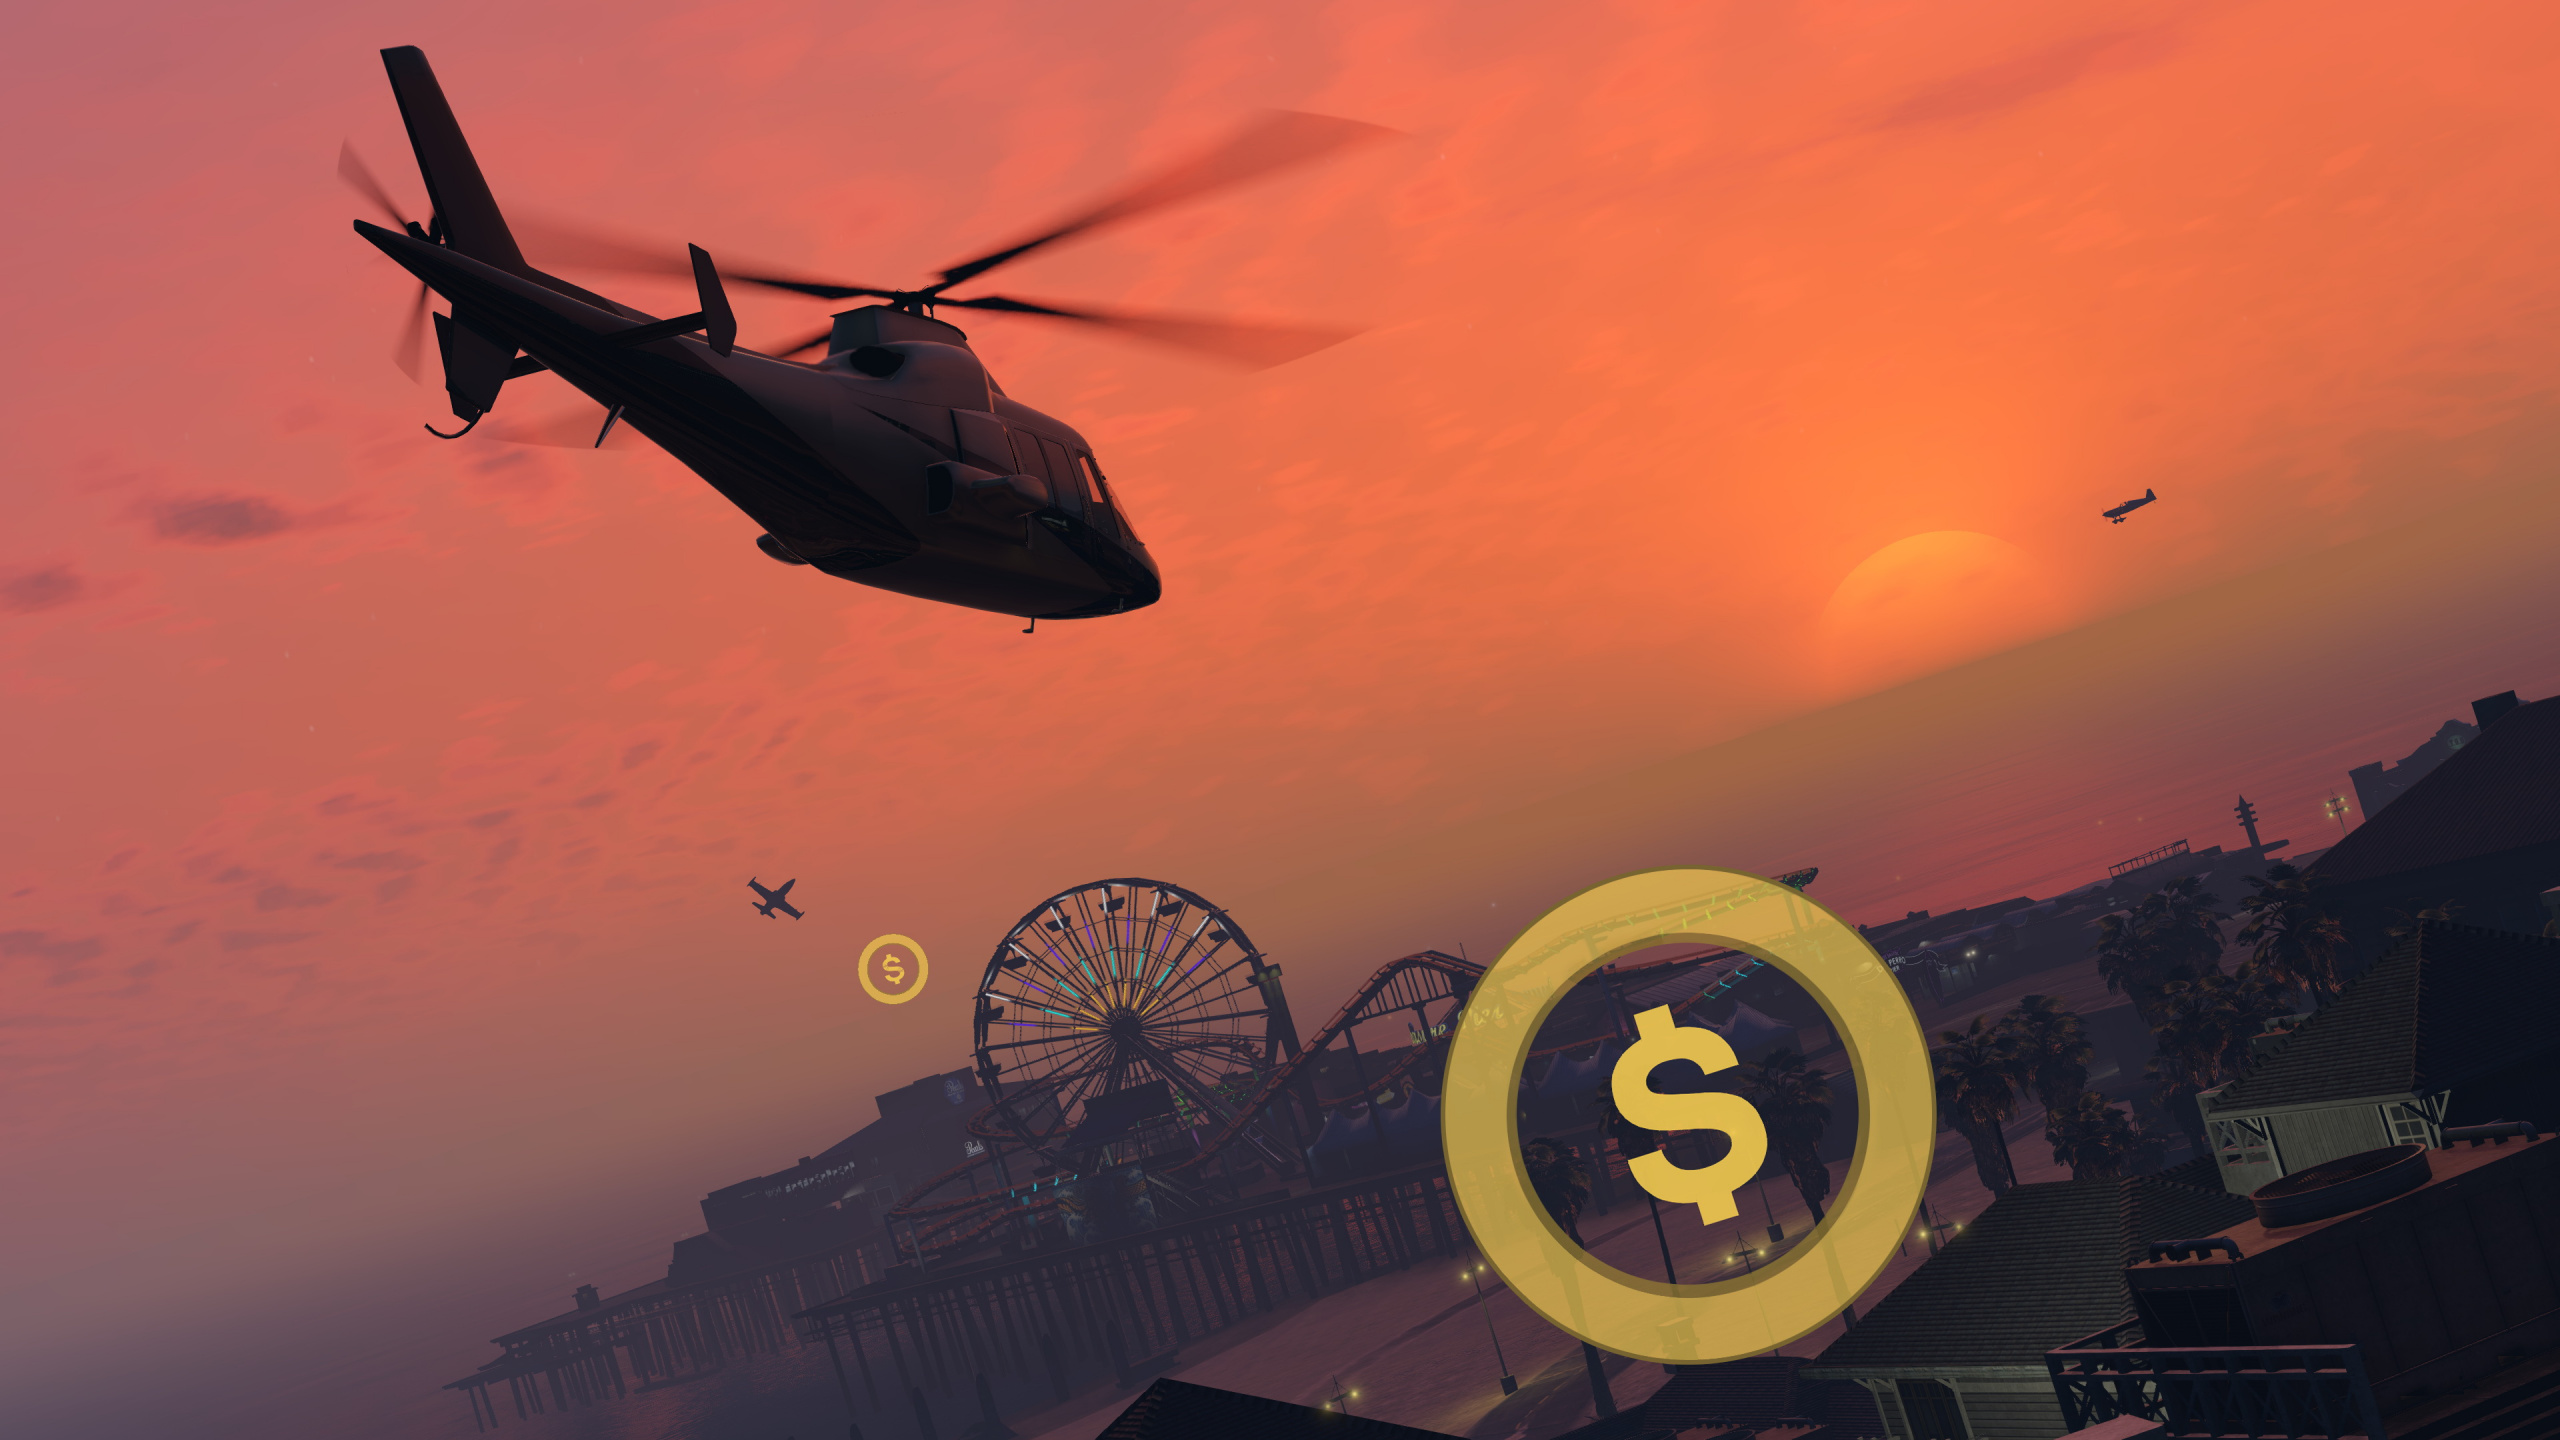 Grand Theft Auto v, Rockstar Games, Mundo Abierto, Playstation 4, Helicóptero. Wallpaper in 2560x1440 Resolution